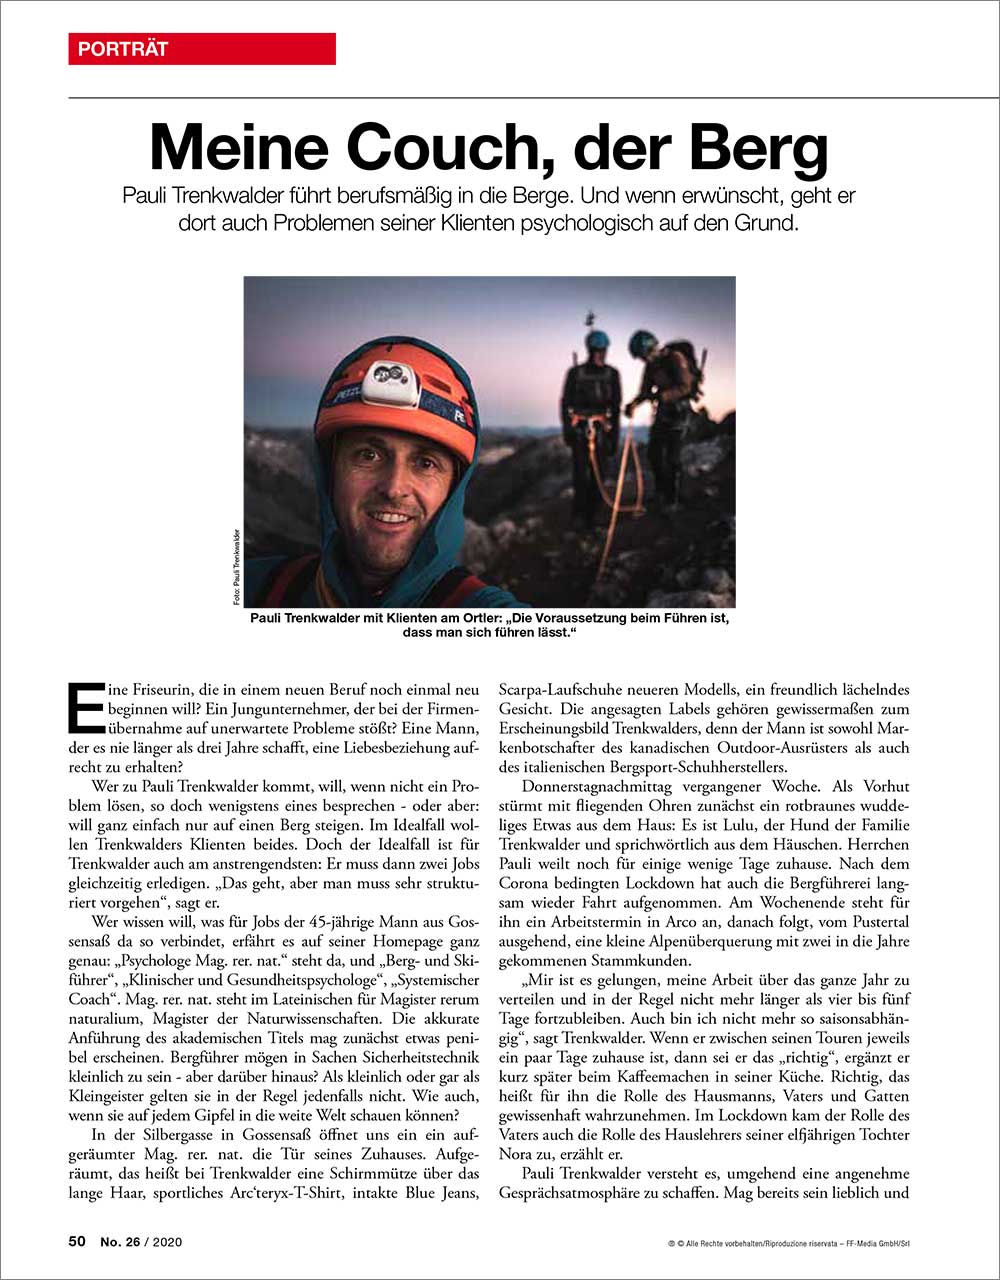 Meine Couch, die Berge. ff – das Südtiroler Wochenmagazin, No. 26/2020 | Pauli Trenkwalder, Berge & Psychologie